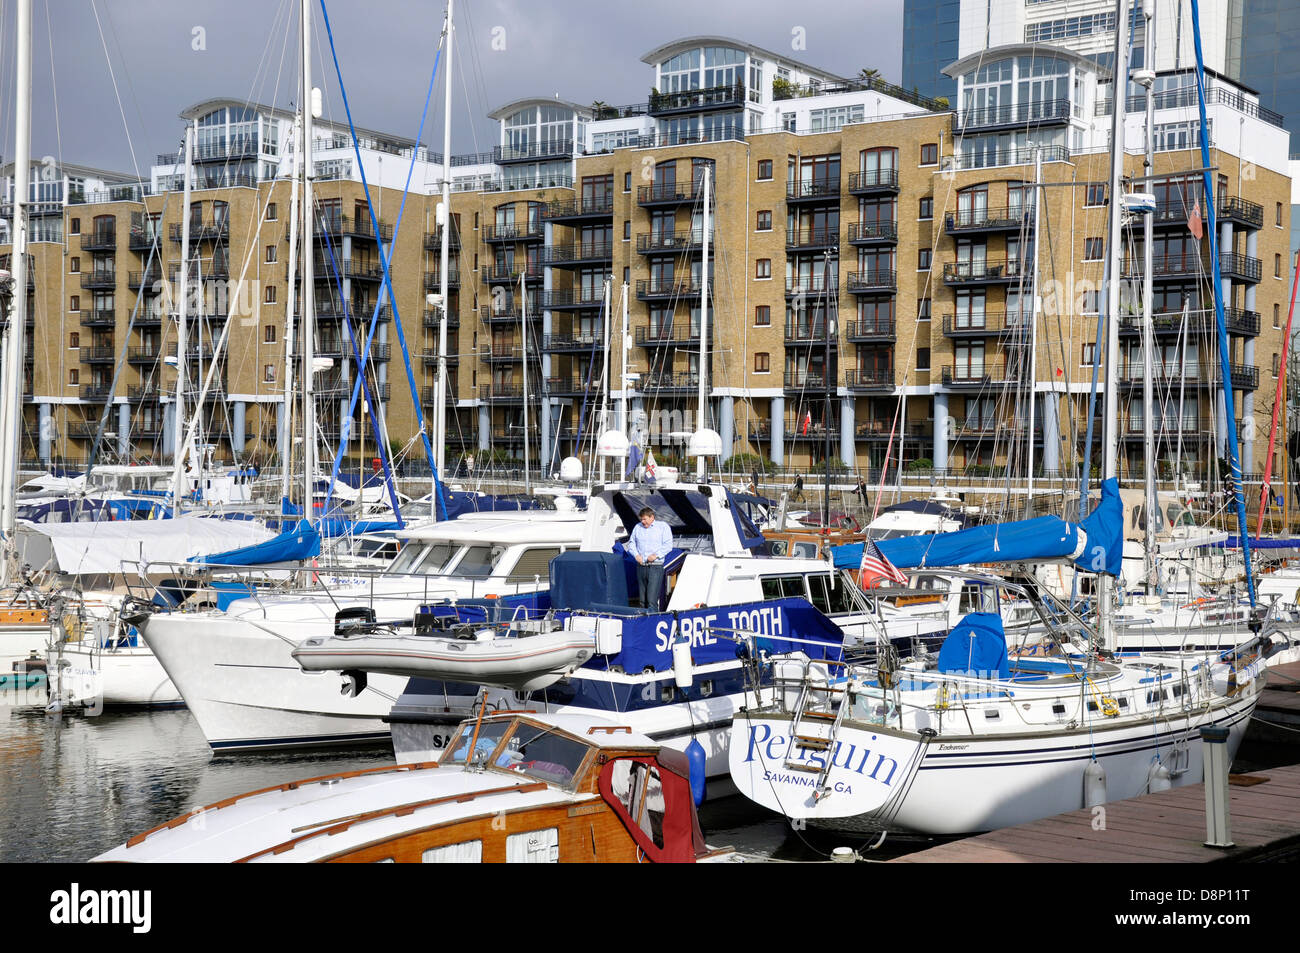 Uomo in piedi su una barca presso San Katharine Docks, con vista della marina e si affaccia su moderni appartamenti / appartamenti. Londra, Inghilterra, Regno Unito. Foto Stock